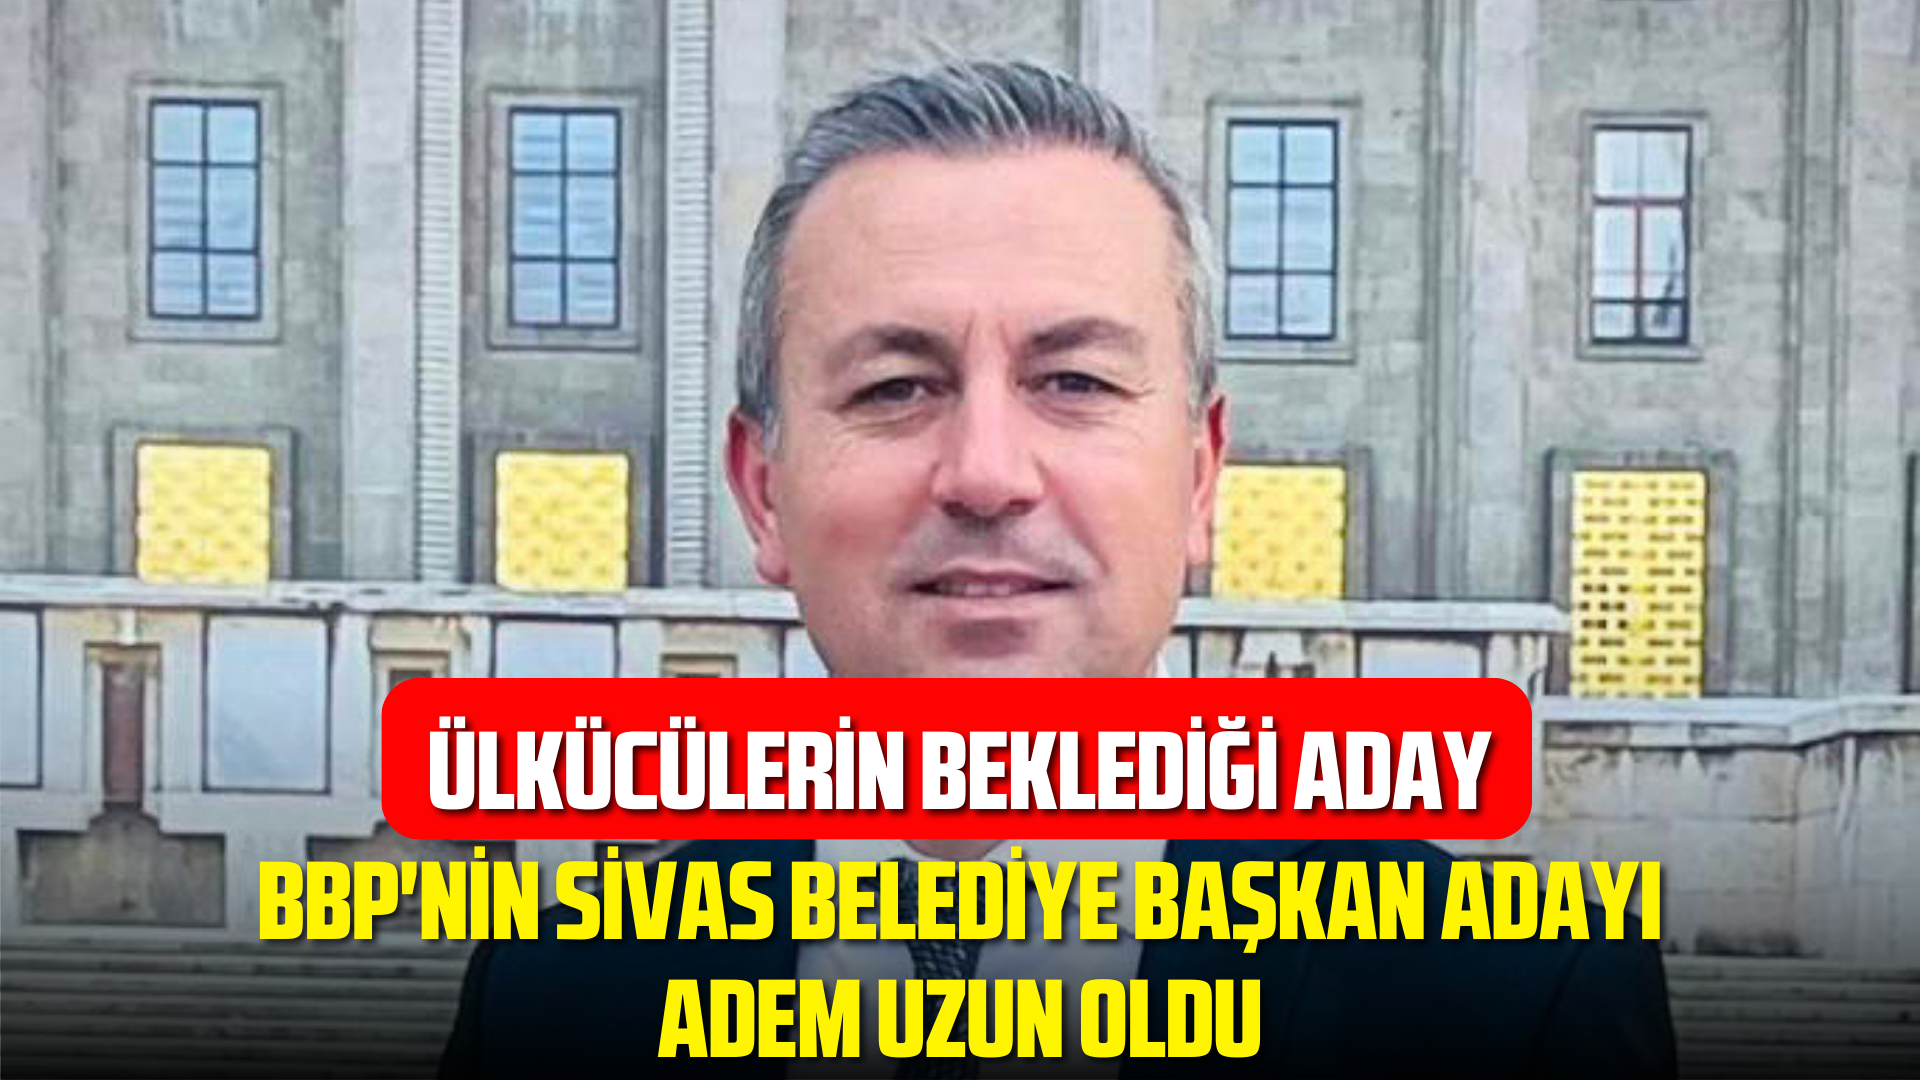 BBP’nin Sivas Belediye Başkan